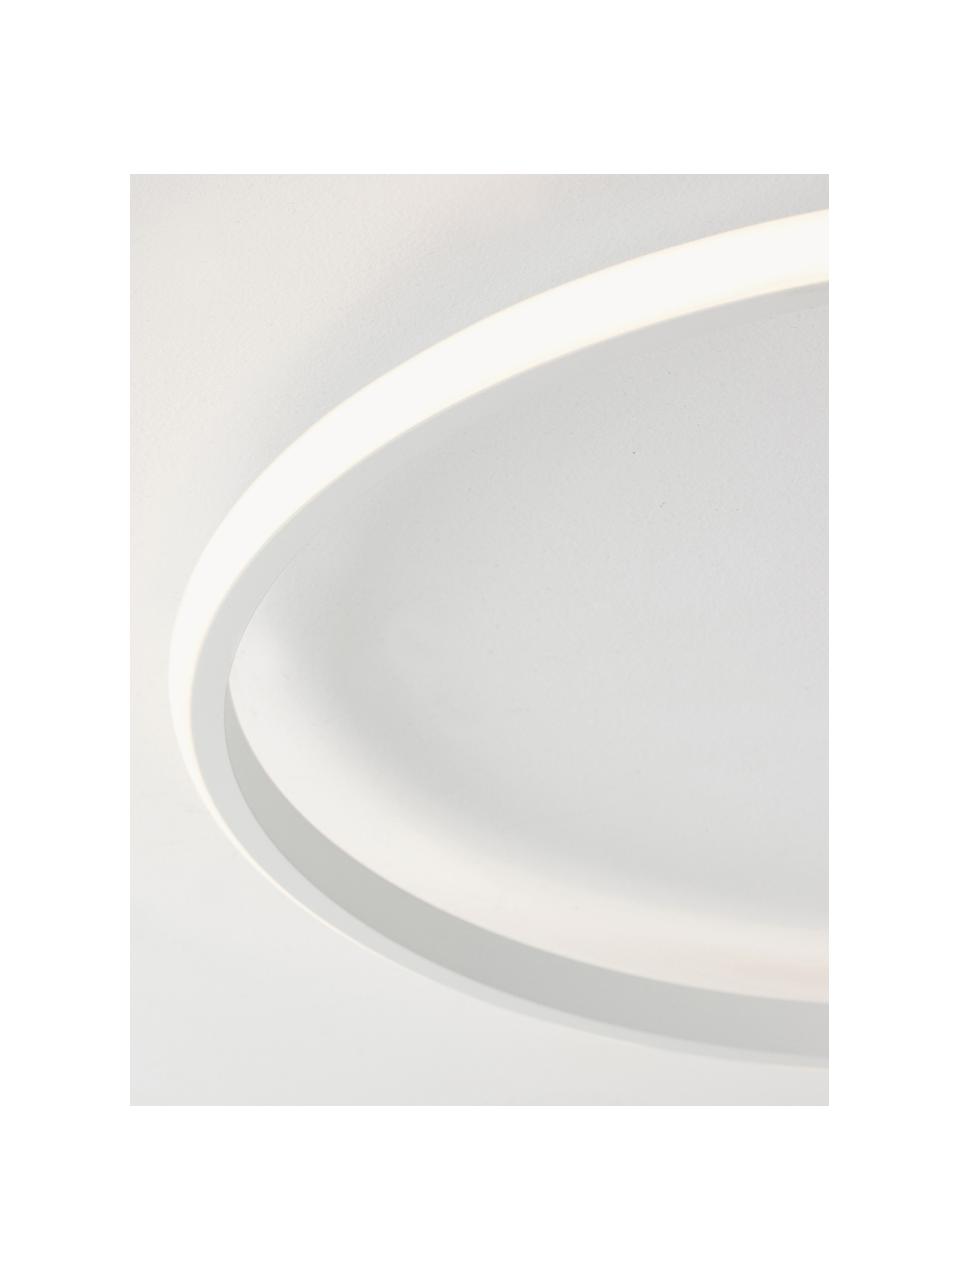 Dimmbare LED-Deckenleuchte Fuline, Lampenschirm: Metall, Baldachin: Metall, Diffusorscheibe: Acryl, Weiss, Ø 50 x H 5 cm